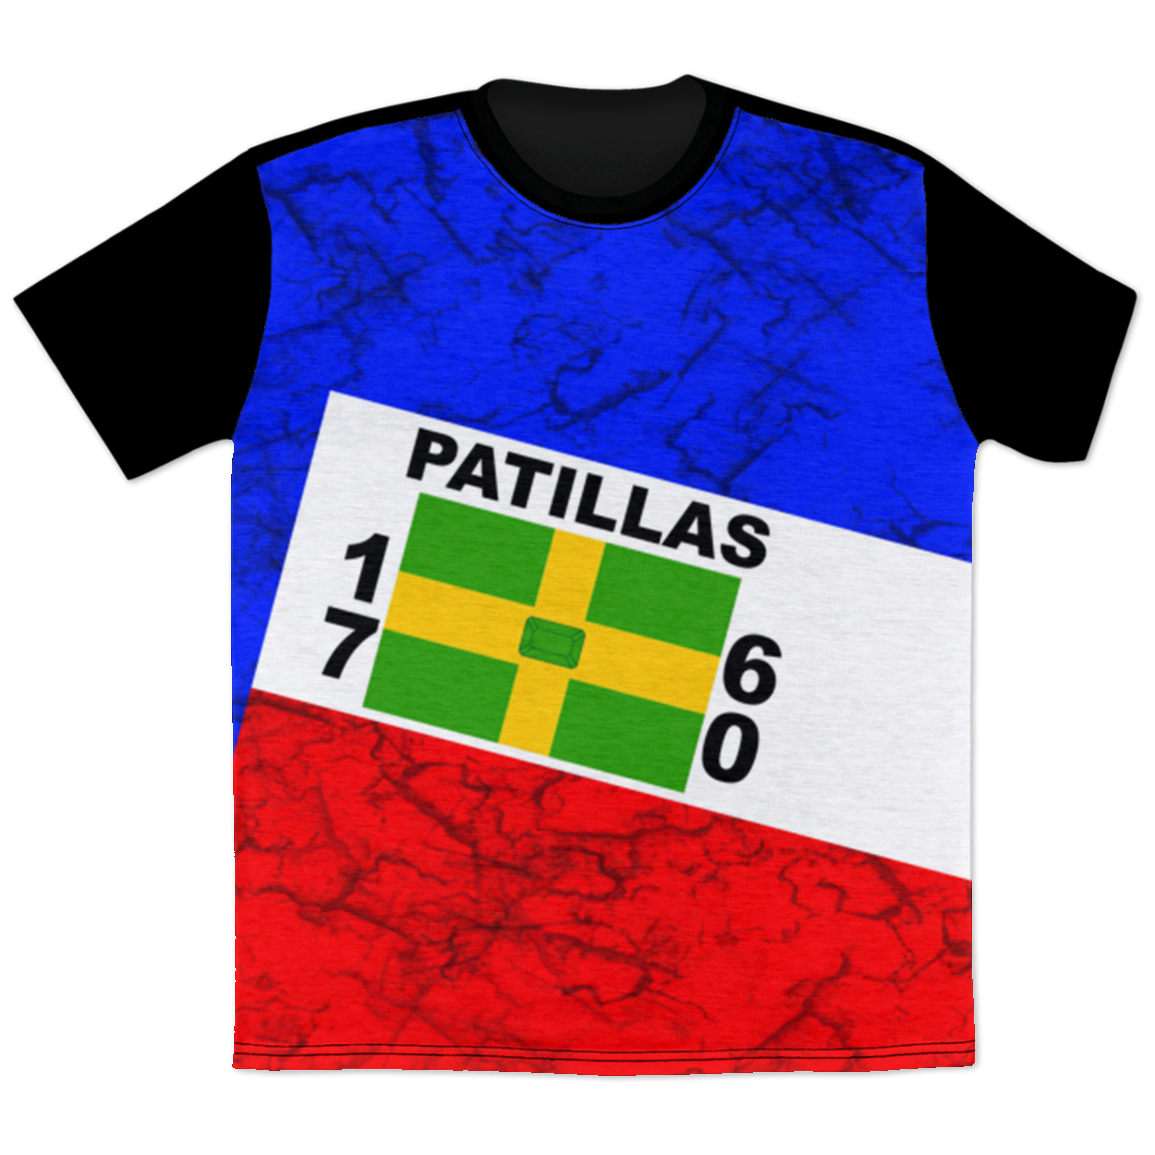 Patillas T-Shirt - Puerto Rican Pride